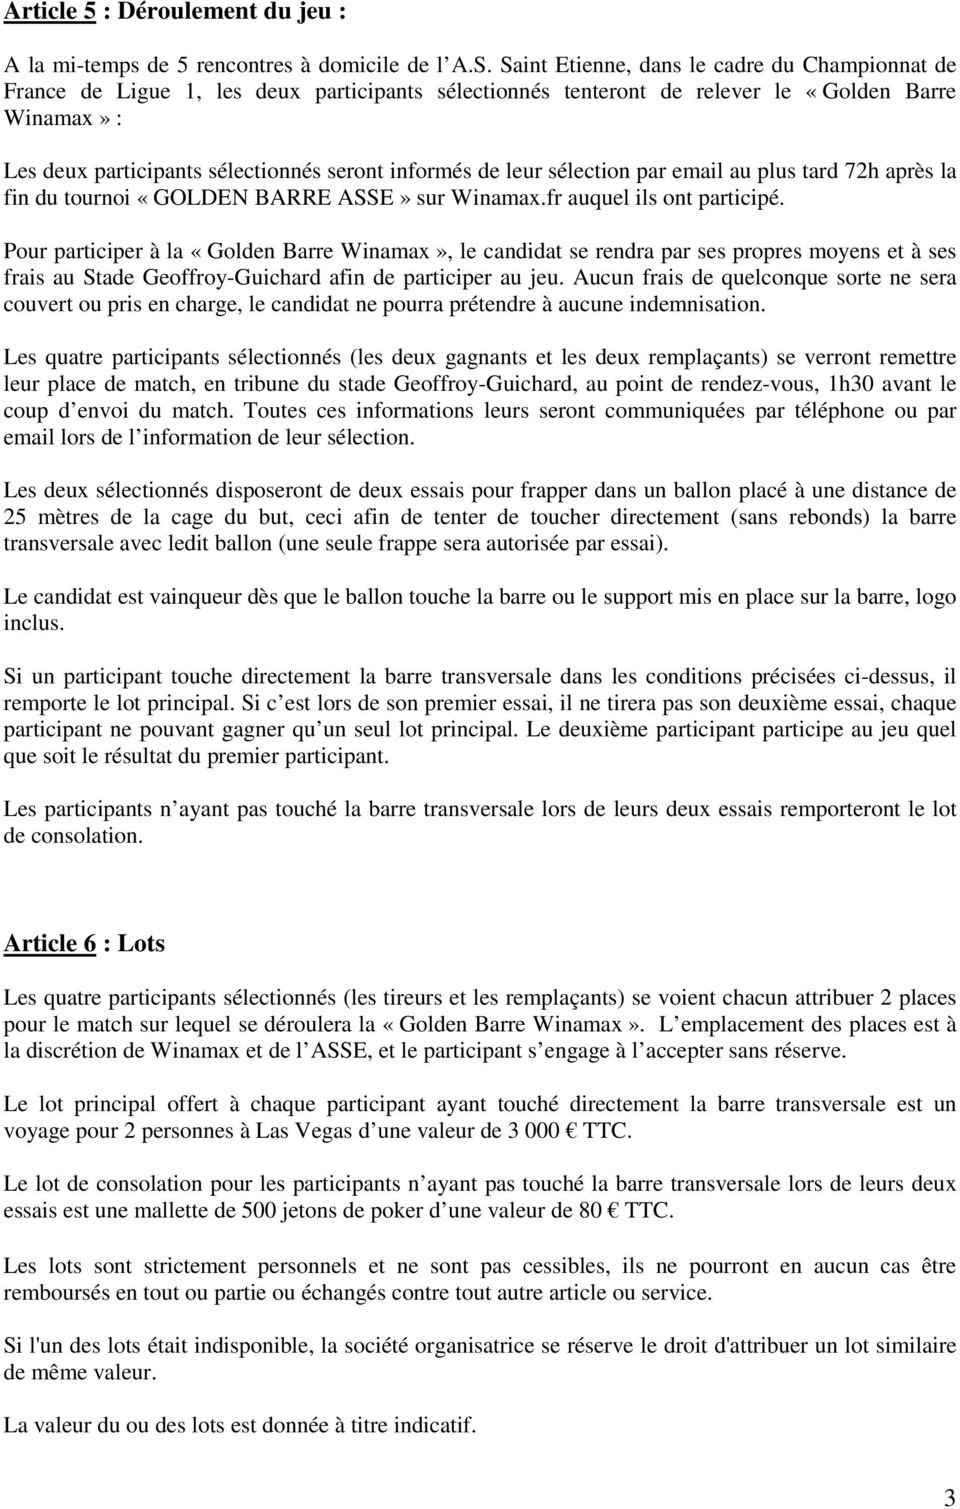 informés de leur sélection par email au plus tard 72h après la fin du tournoi «GOLDEN BARRE ASSE» sur Winamax.fr auquel ils ont participé.